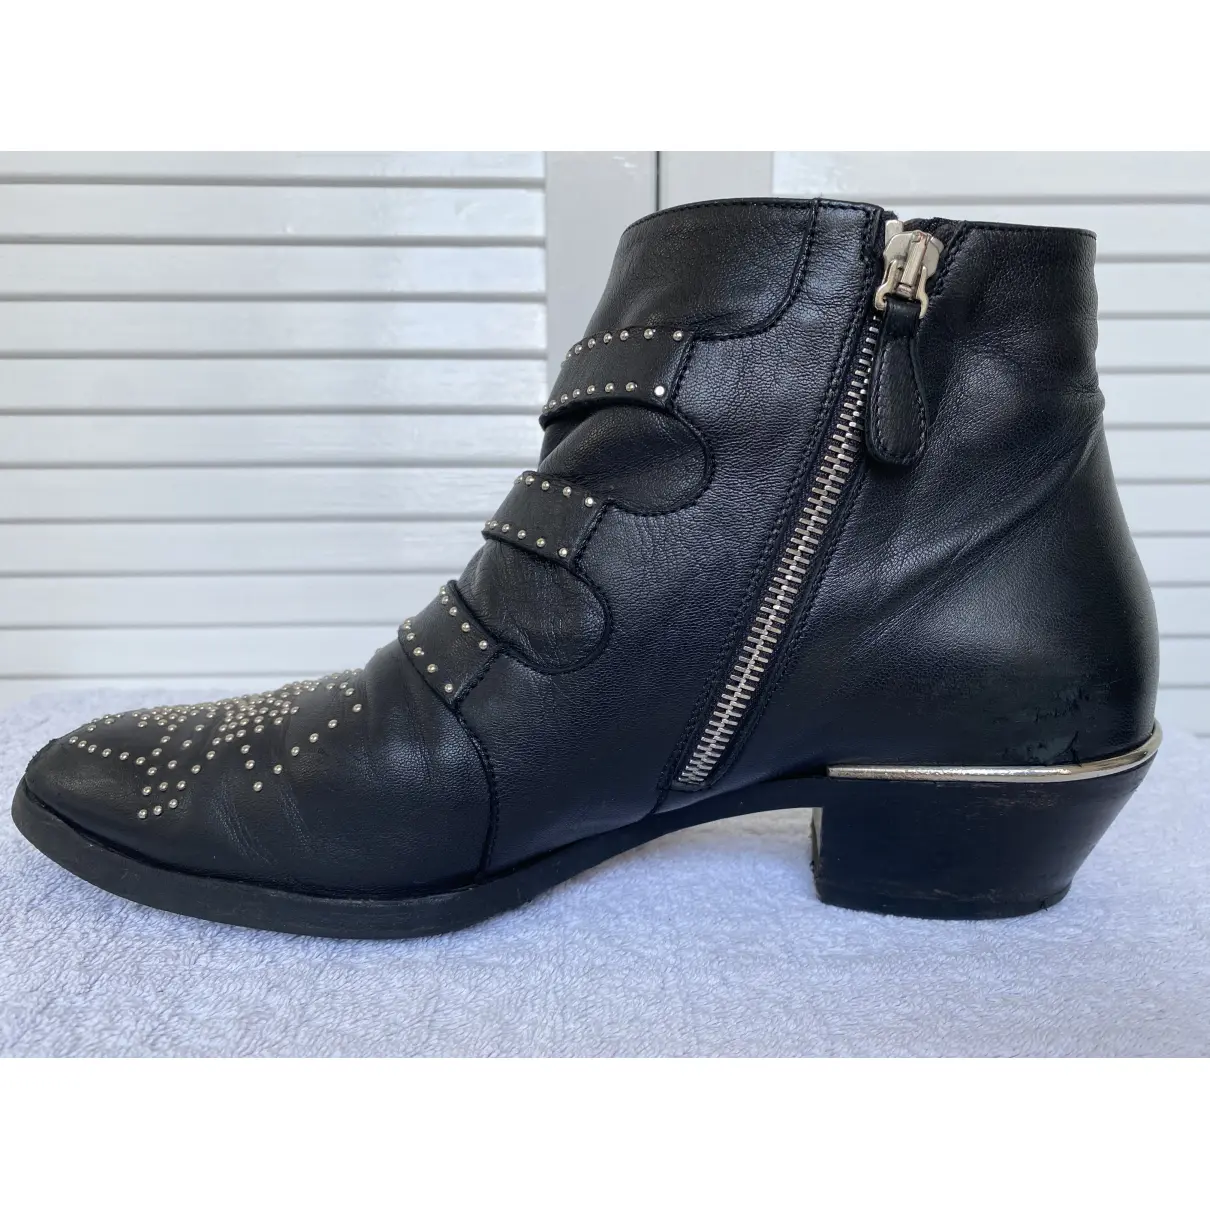 Susanna leather western boots Chloé